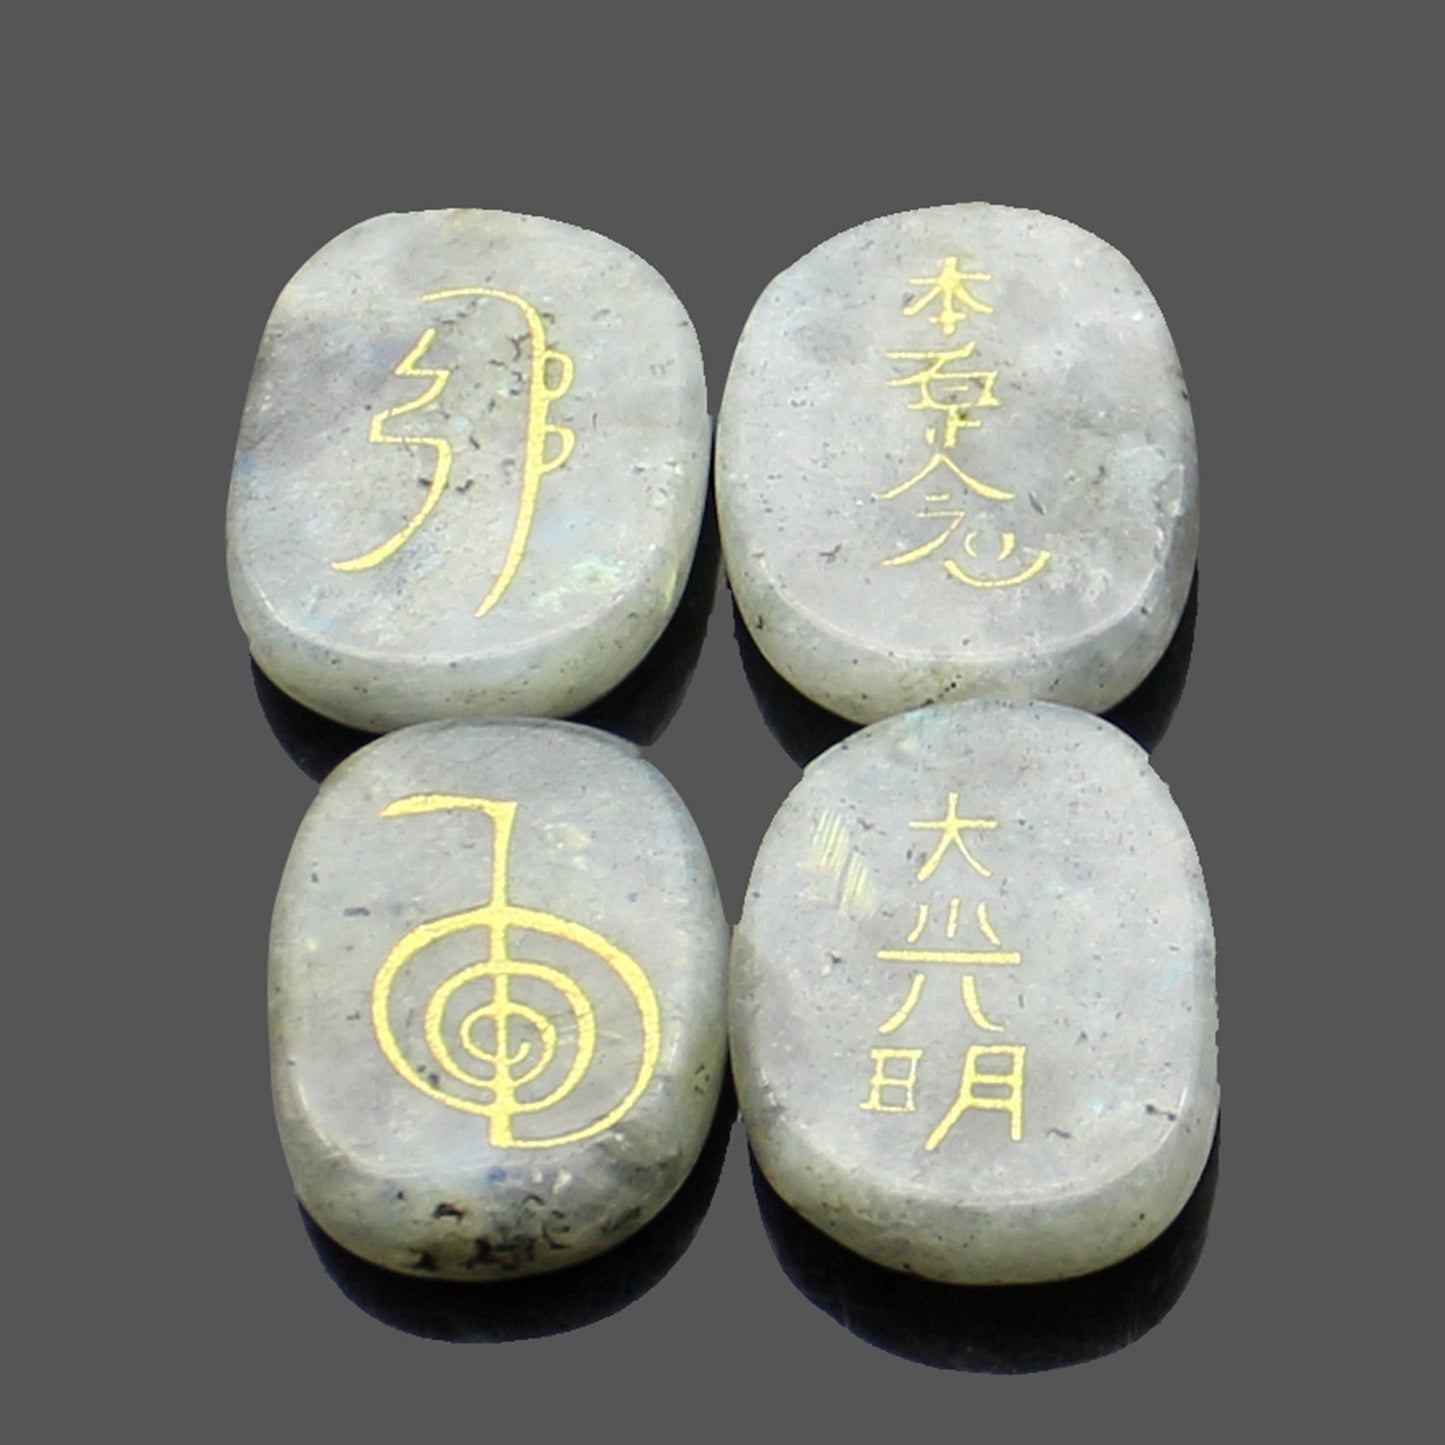 four reiki symbol engraved stones chokurei seihiki honshazeshonen daikomyo  (power, emotion, distance, higher level or master) labradorite